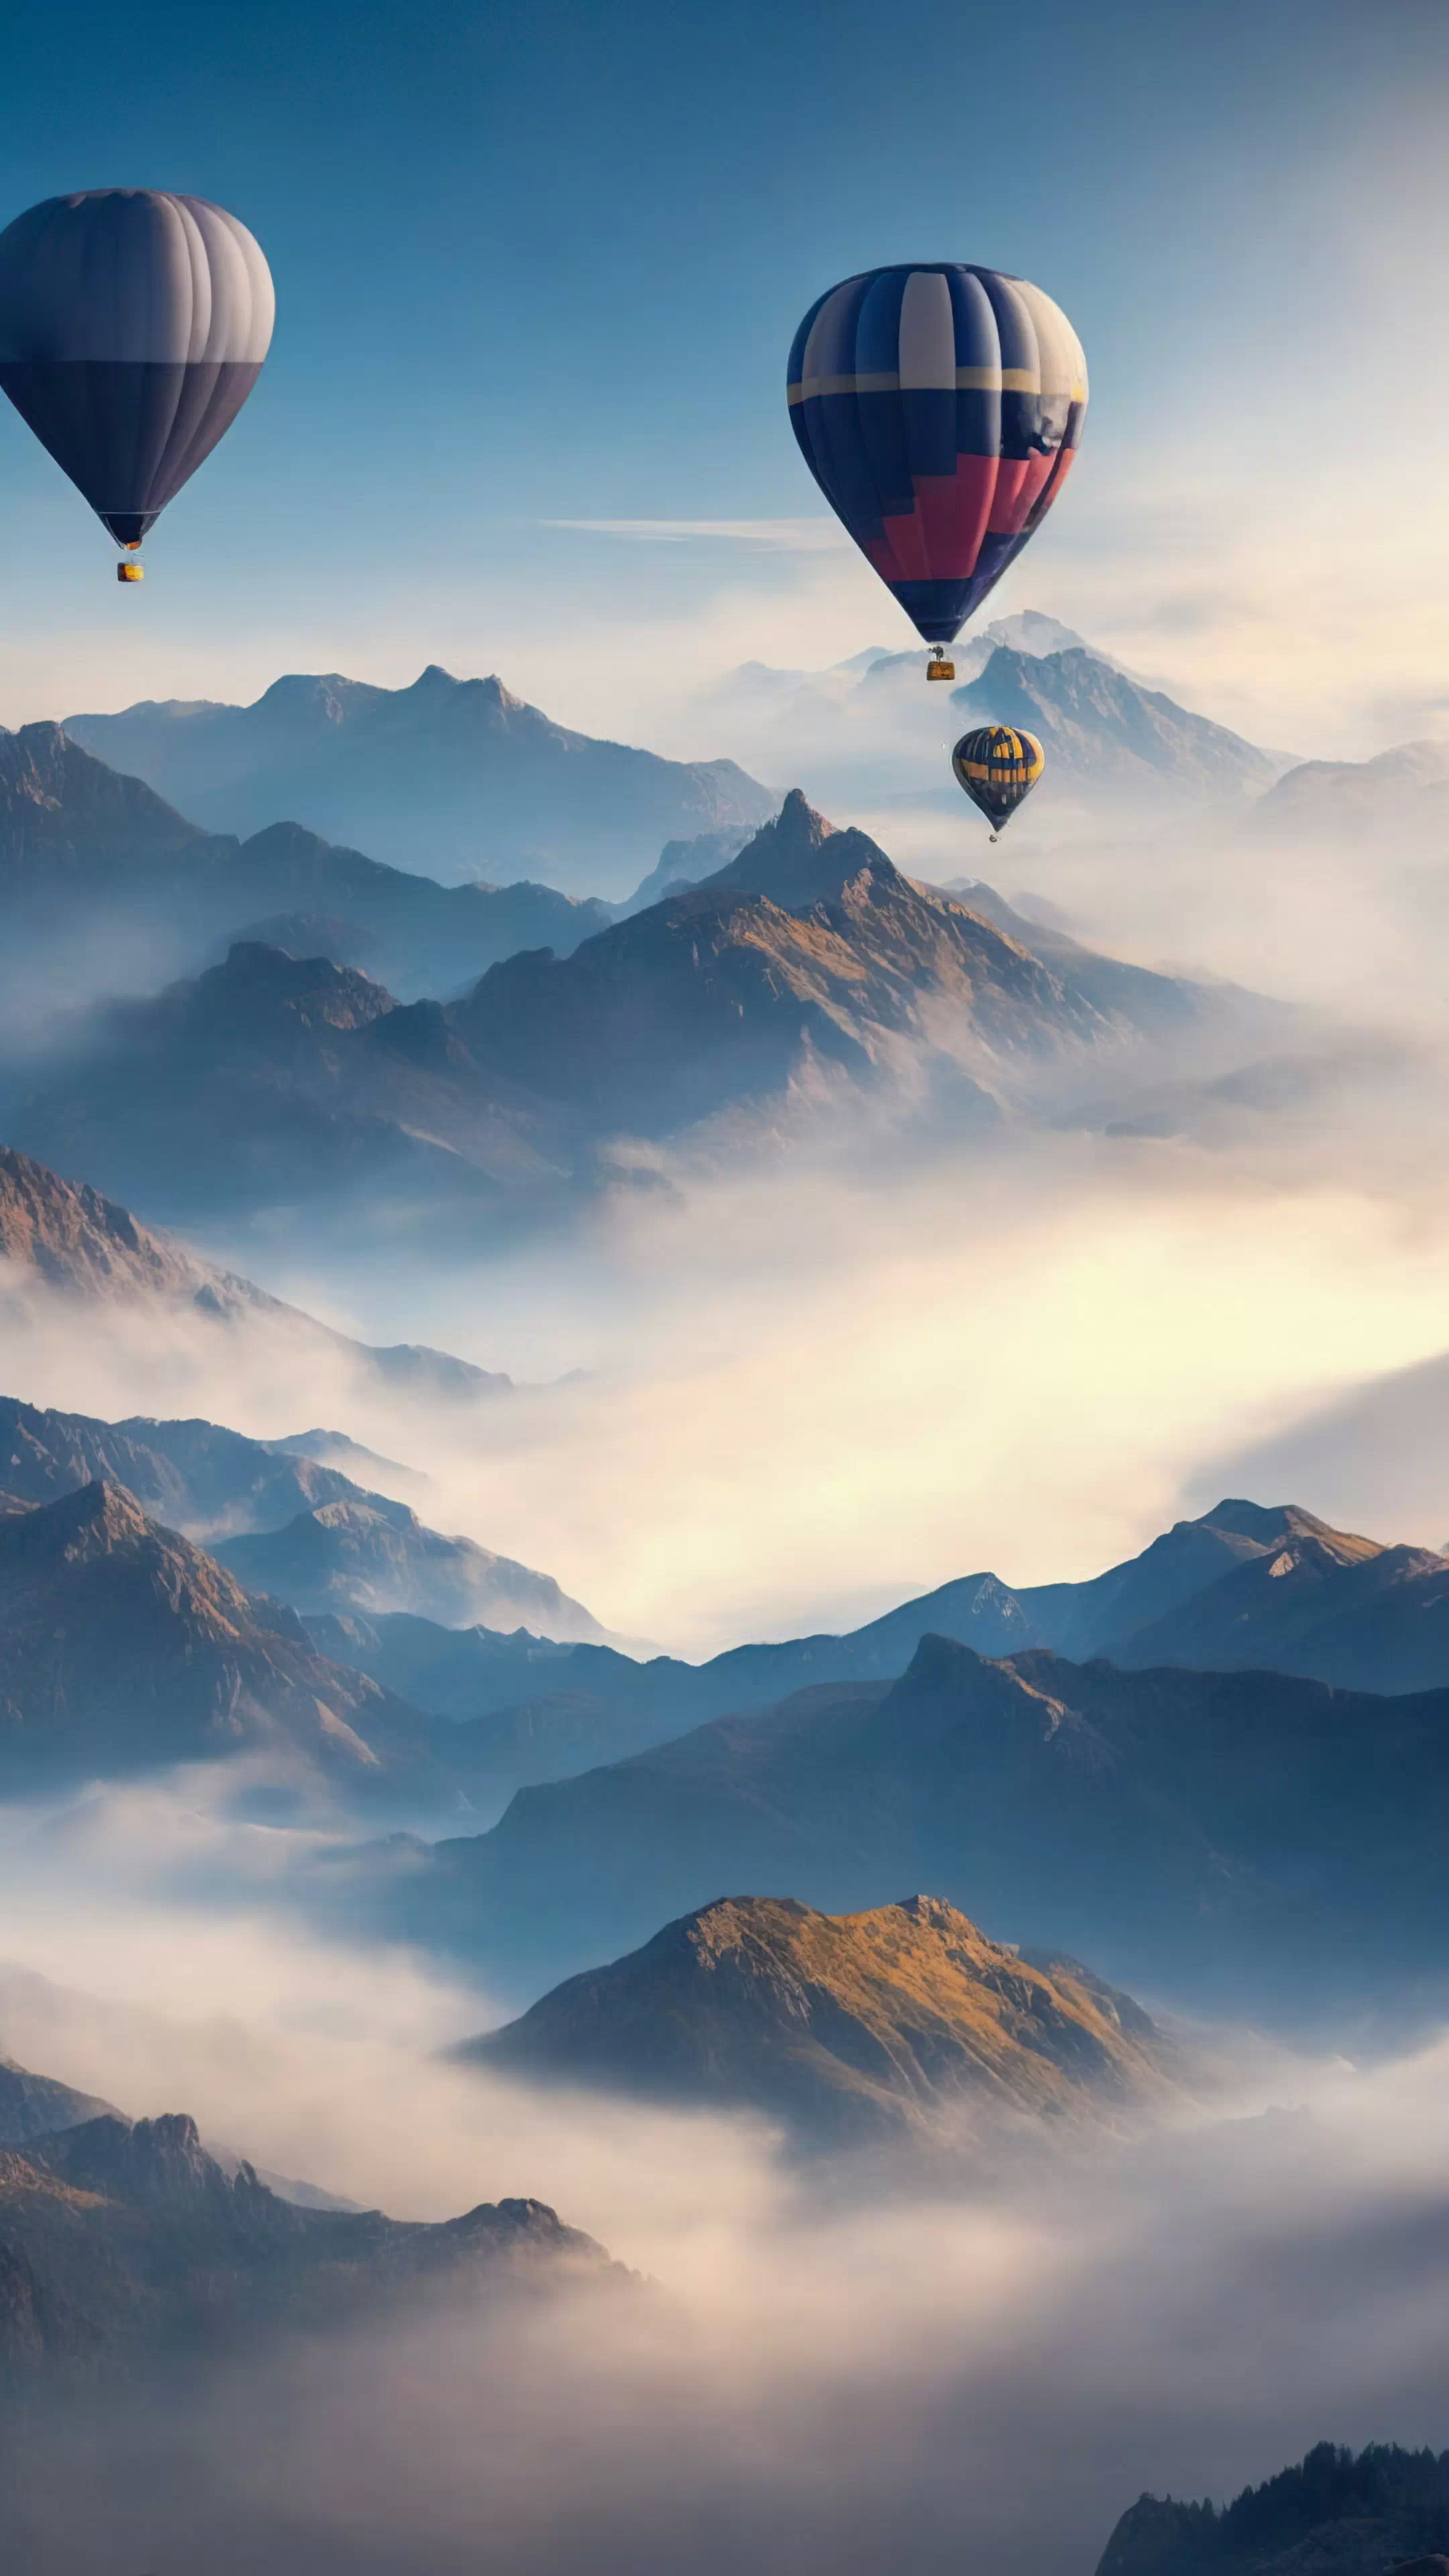 Apportez la beauté des cieux à votre téléphone avec notre fond d'écran HD de paysages, capturant un ciel surréaliste rempli de montgolfières au-dessus d'un paysage montagneux, et laissez votre appareil devenir une fenêtre sur un monde de fantaisie.